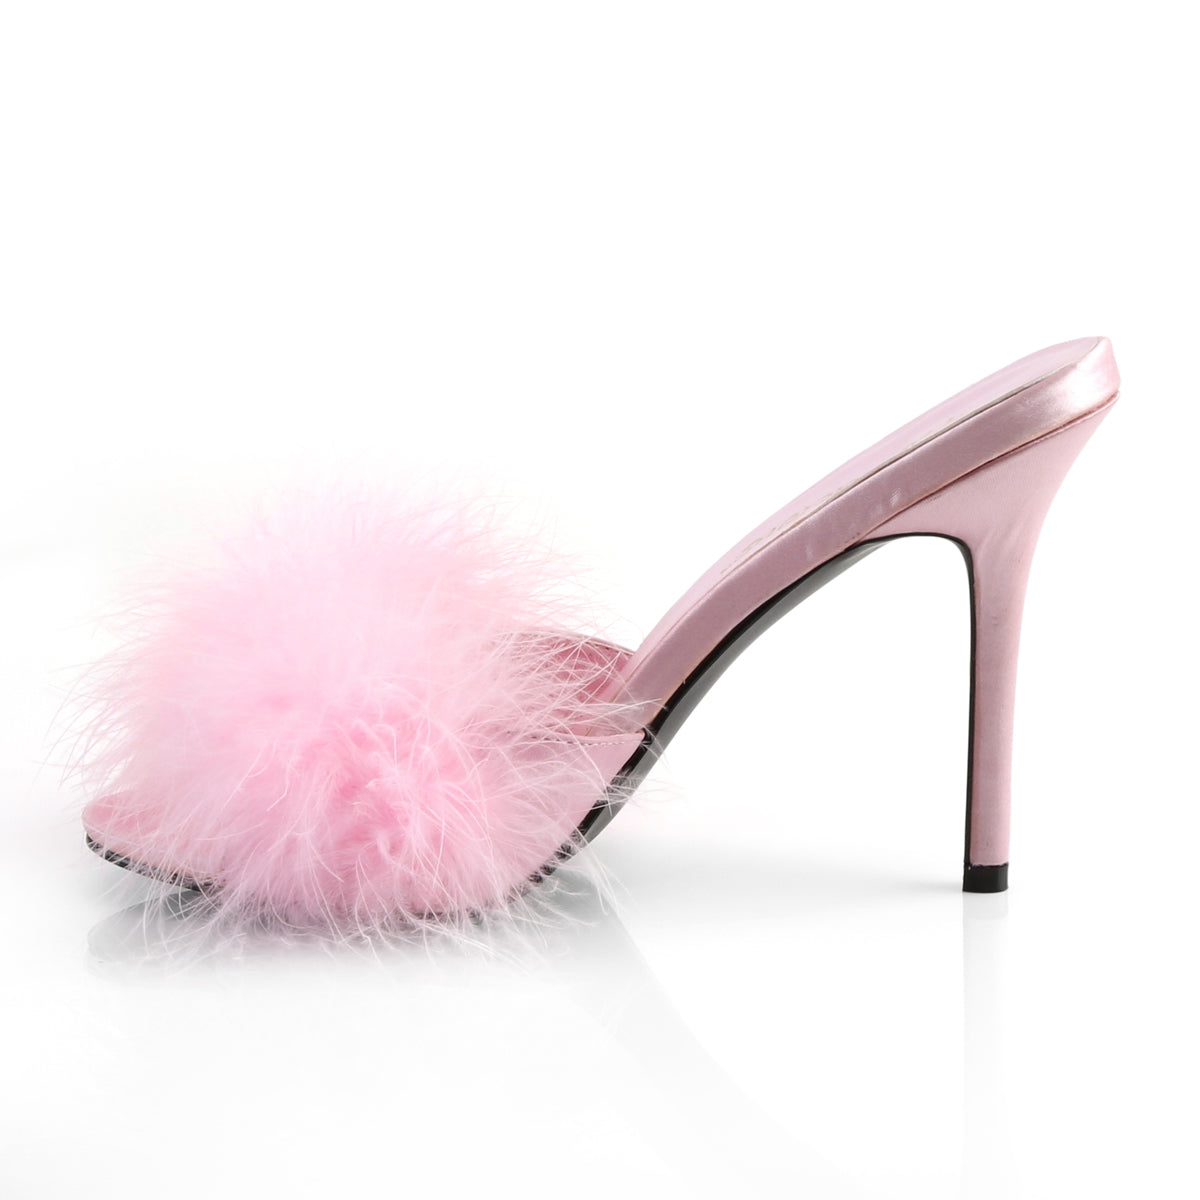 CLASSIQUE-01F Fabulicious 4" Heel Pink Bedroom Sexy Shoes-Fabulicious- Sexy Shoes Pole Dance Heels